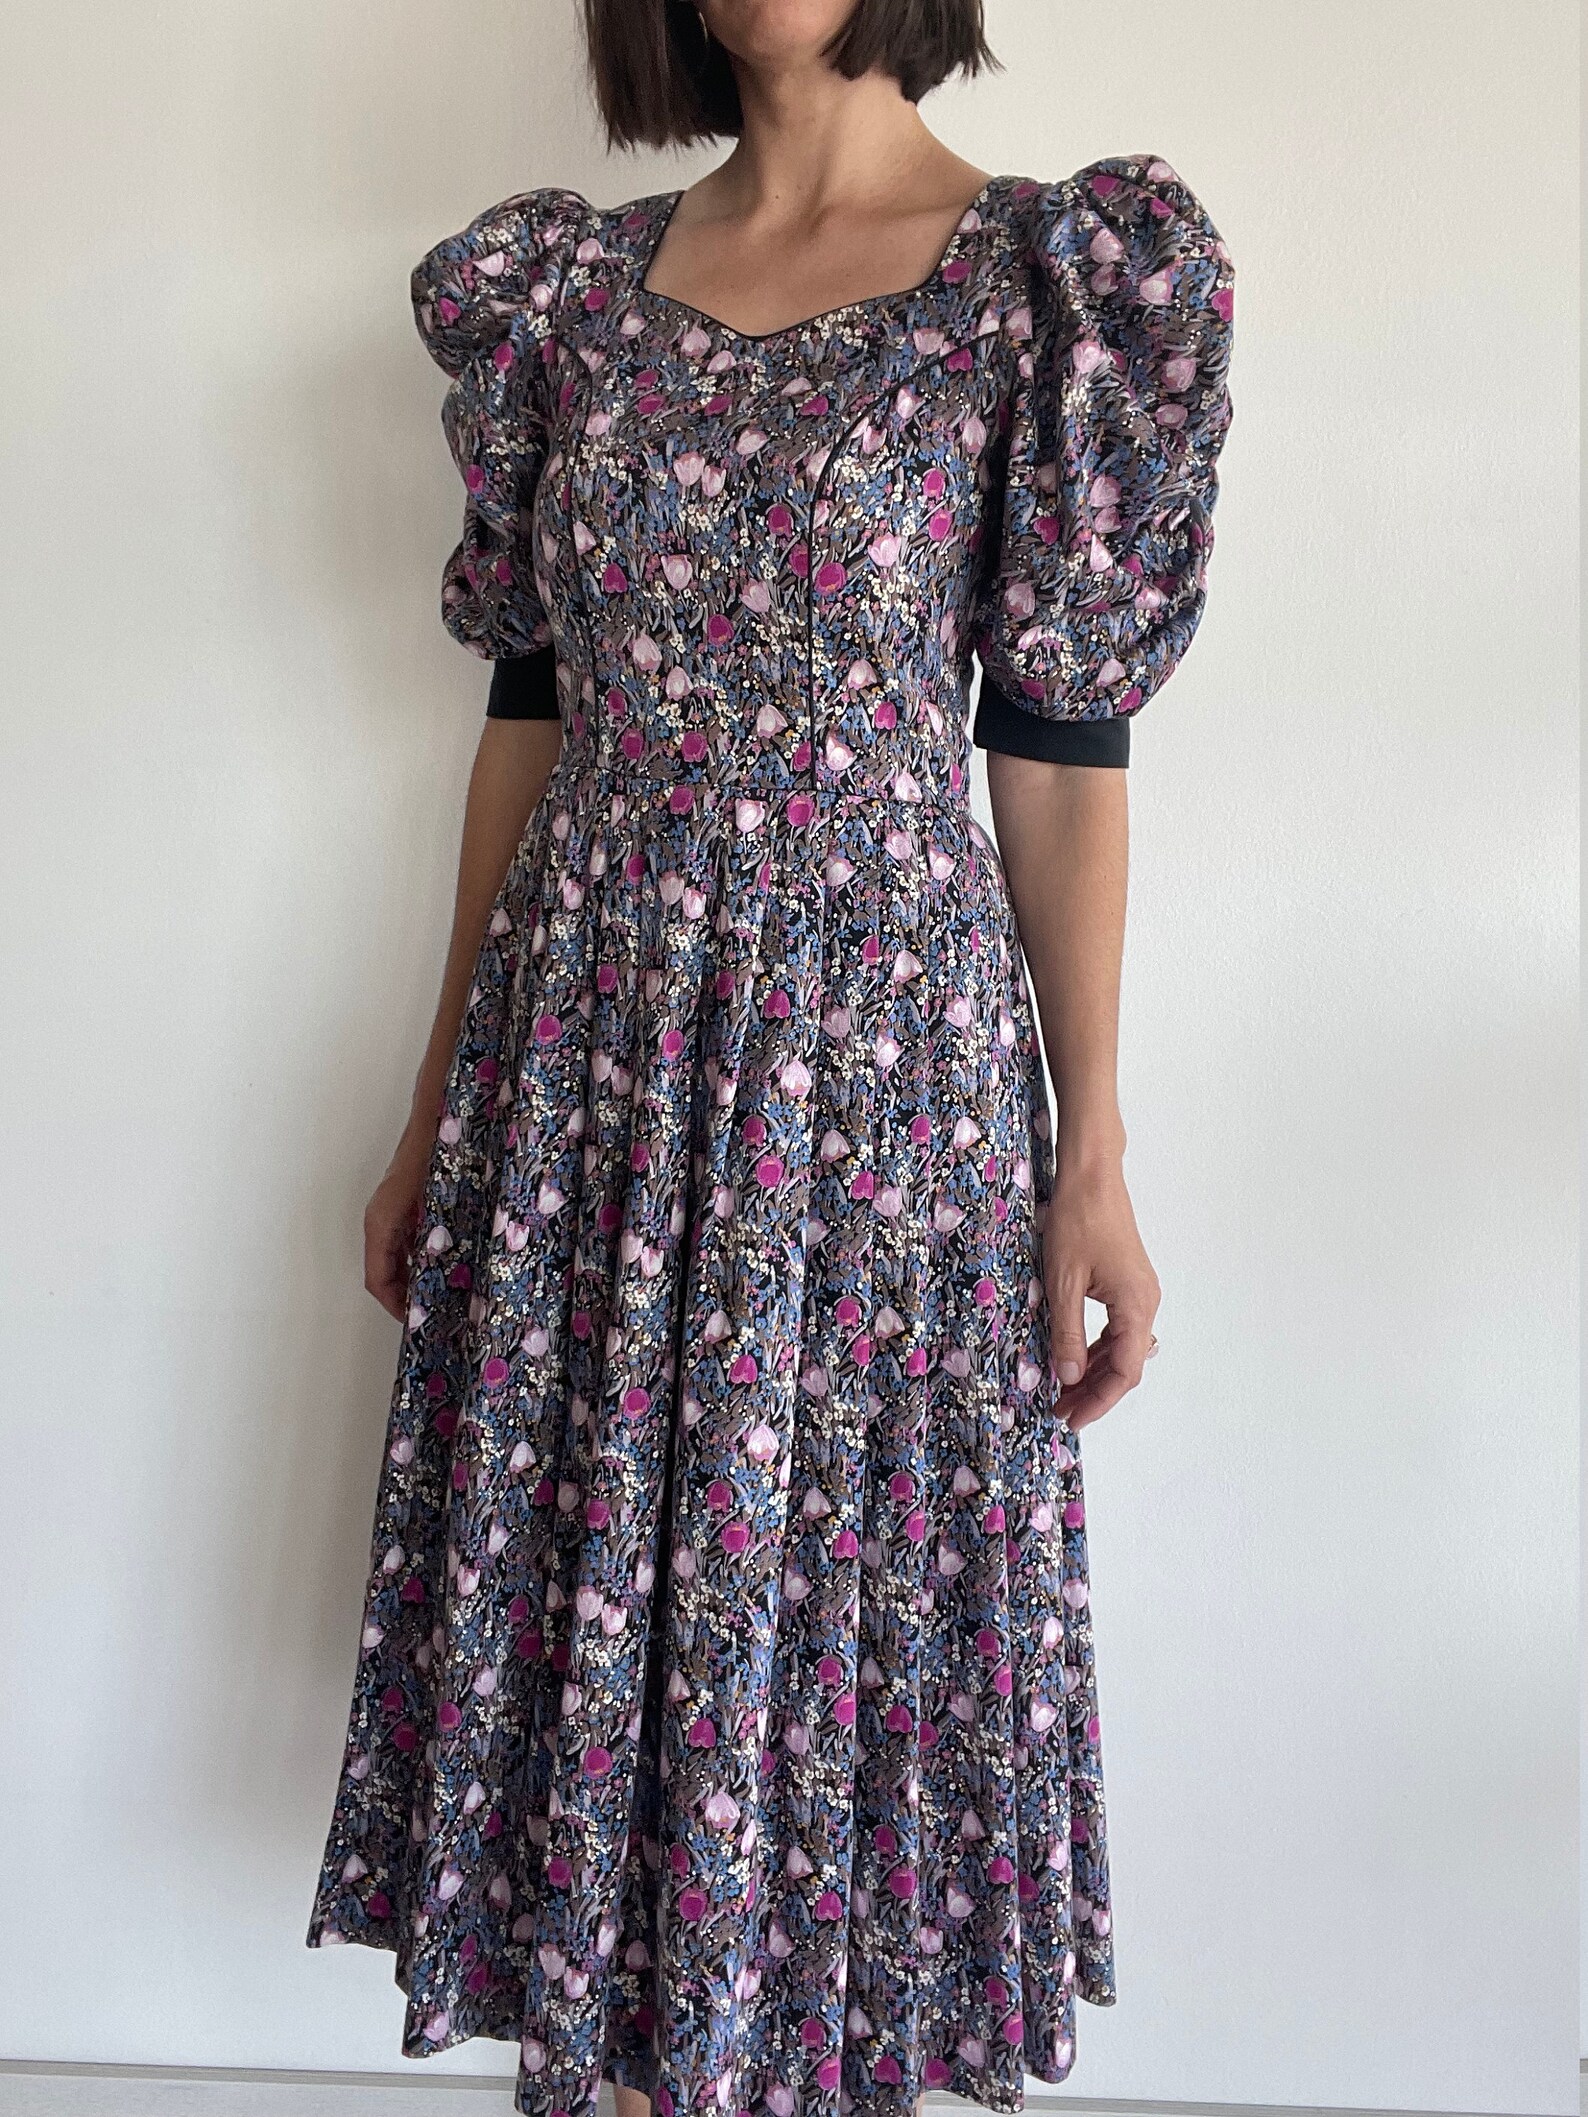 Vintage Austrian milkmaid dirndl dress cottagecore soft cotton | Etsy